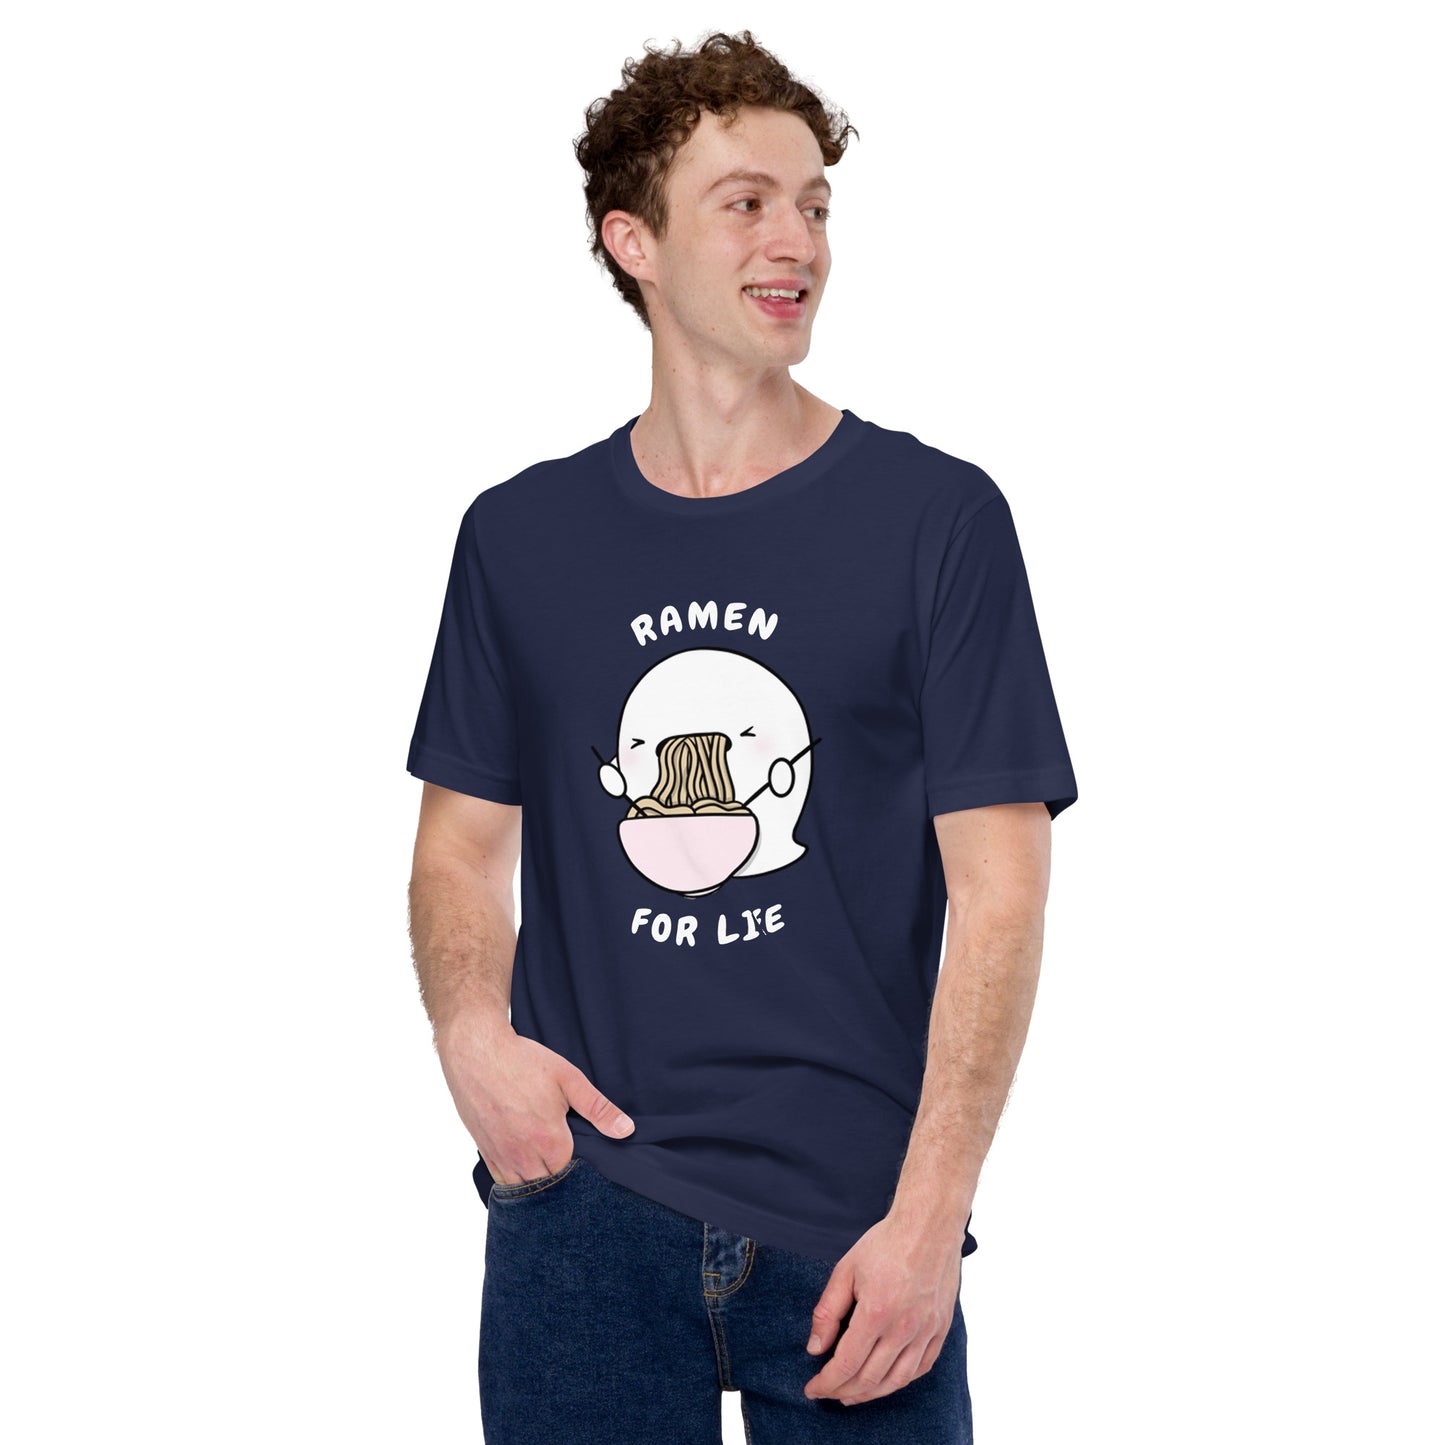 Ramen for life - Unisex t-shirt